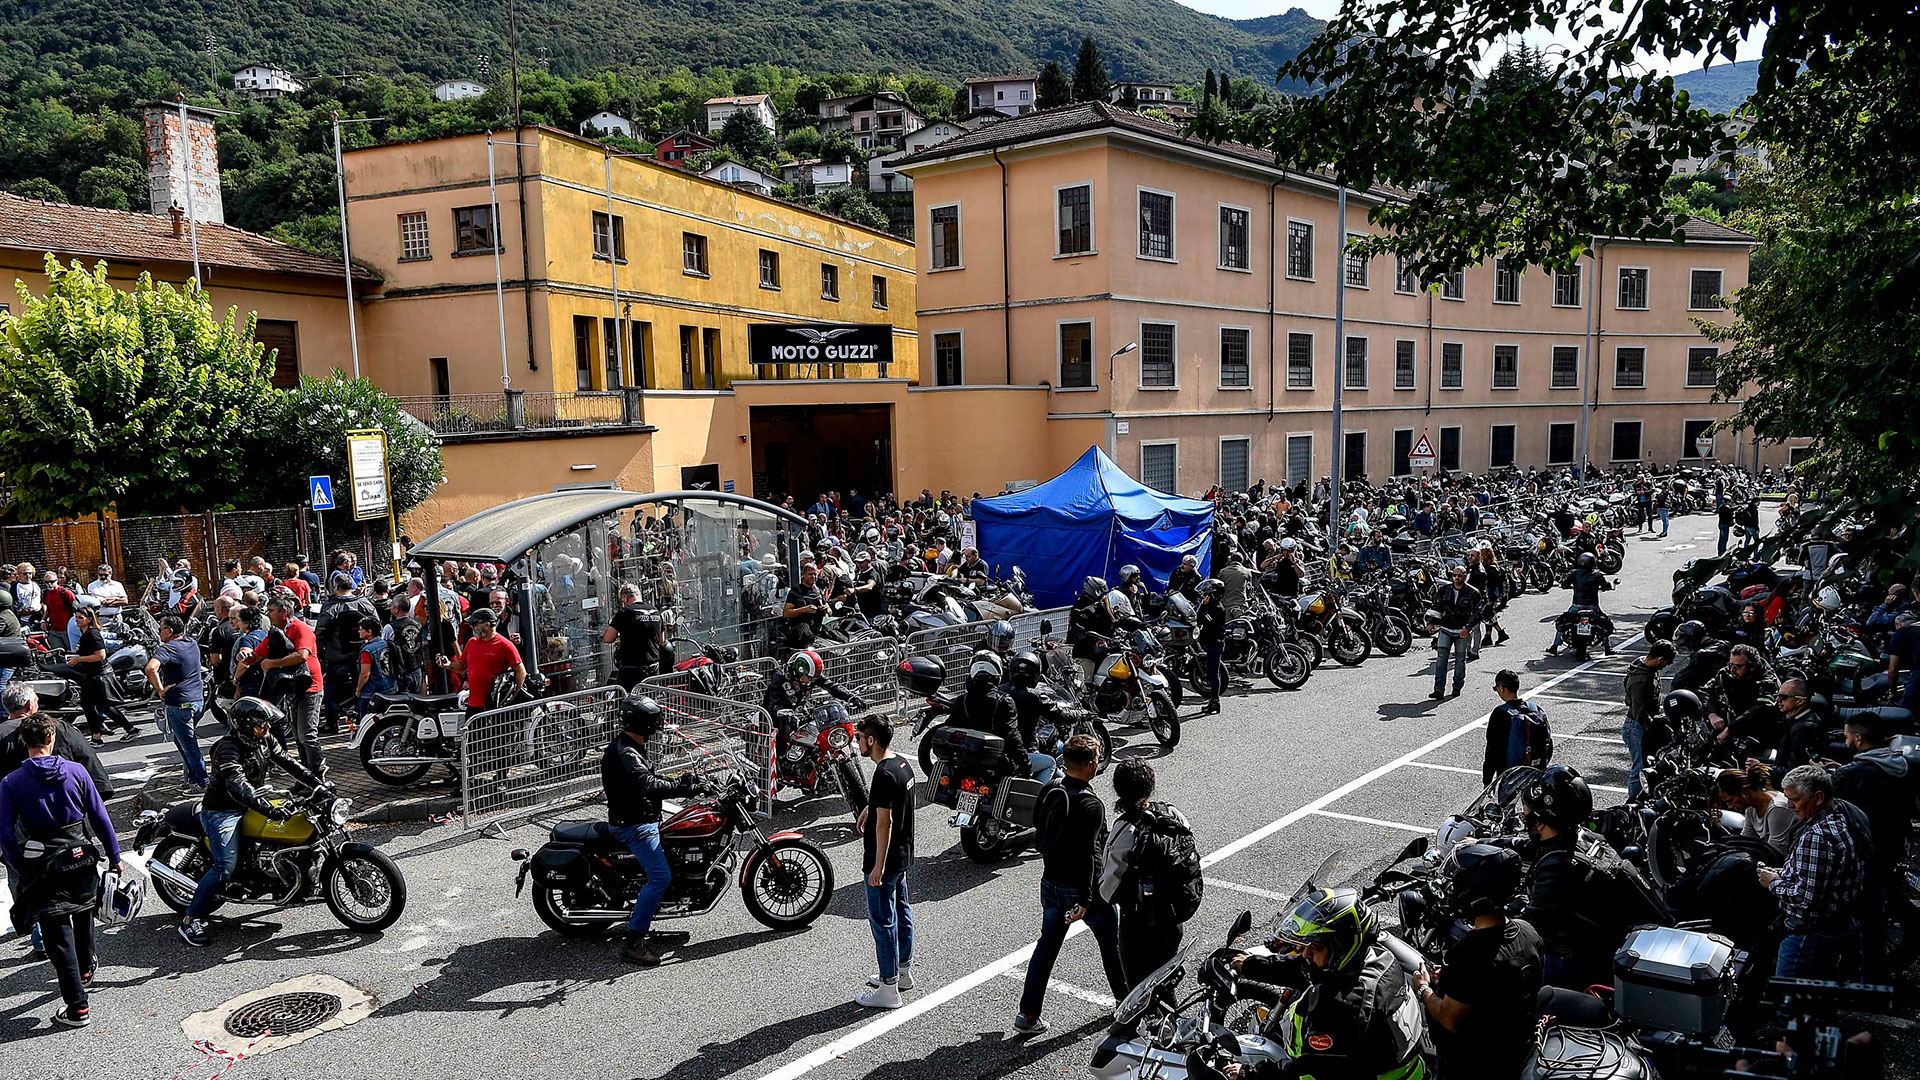 La fiesta por el centenario de Moto Guzzi será del 8 al 11 de septiembre